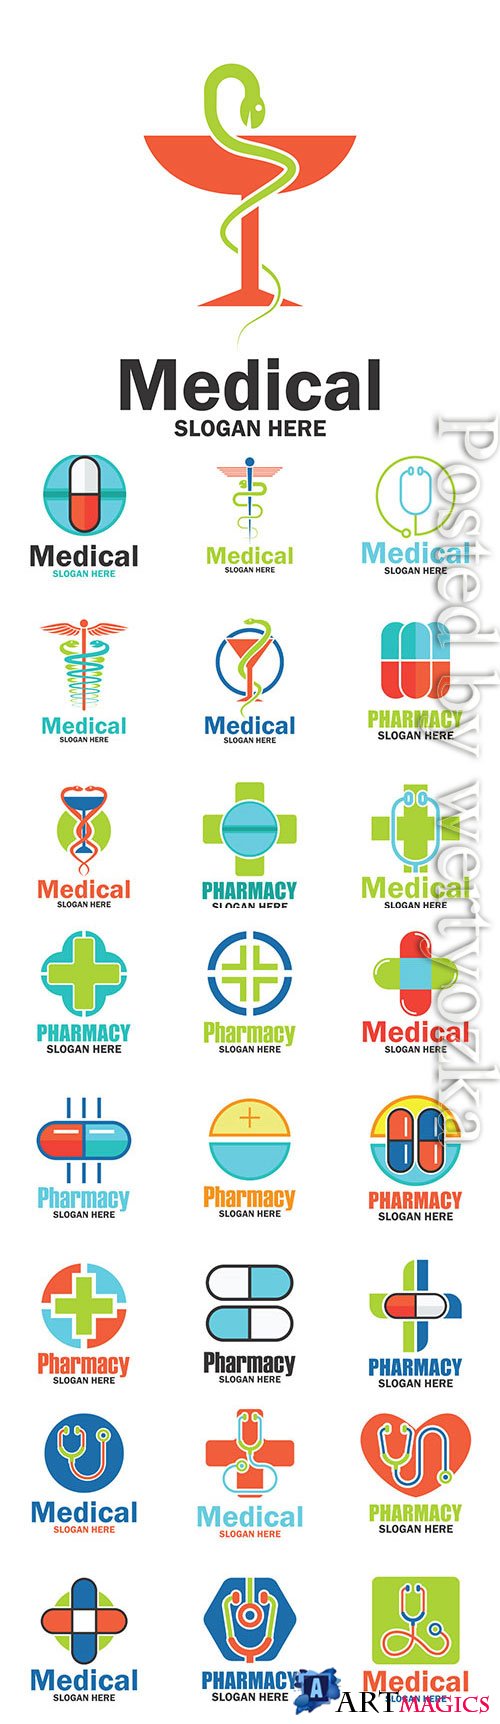 Medicine logos in vector